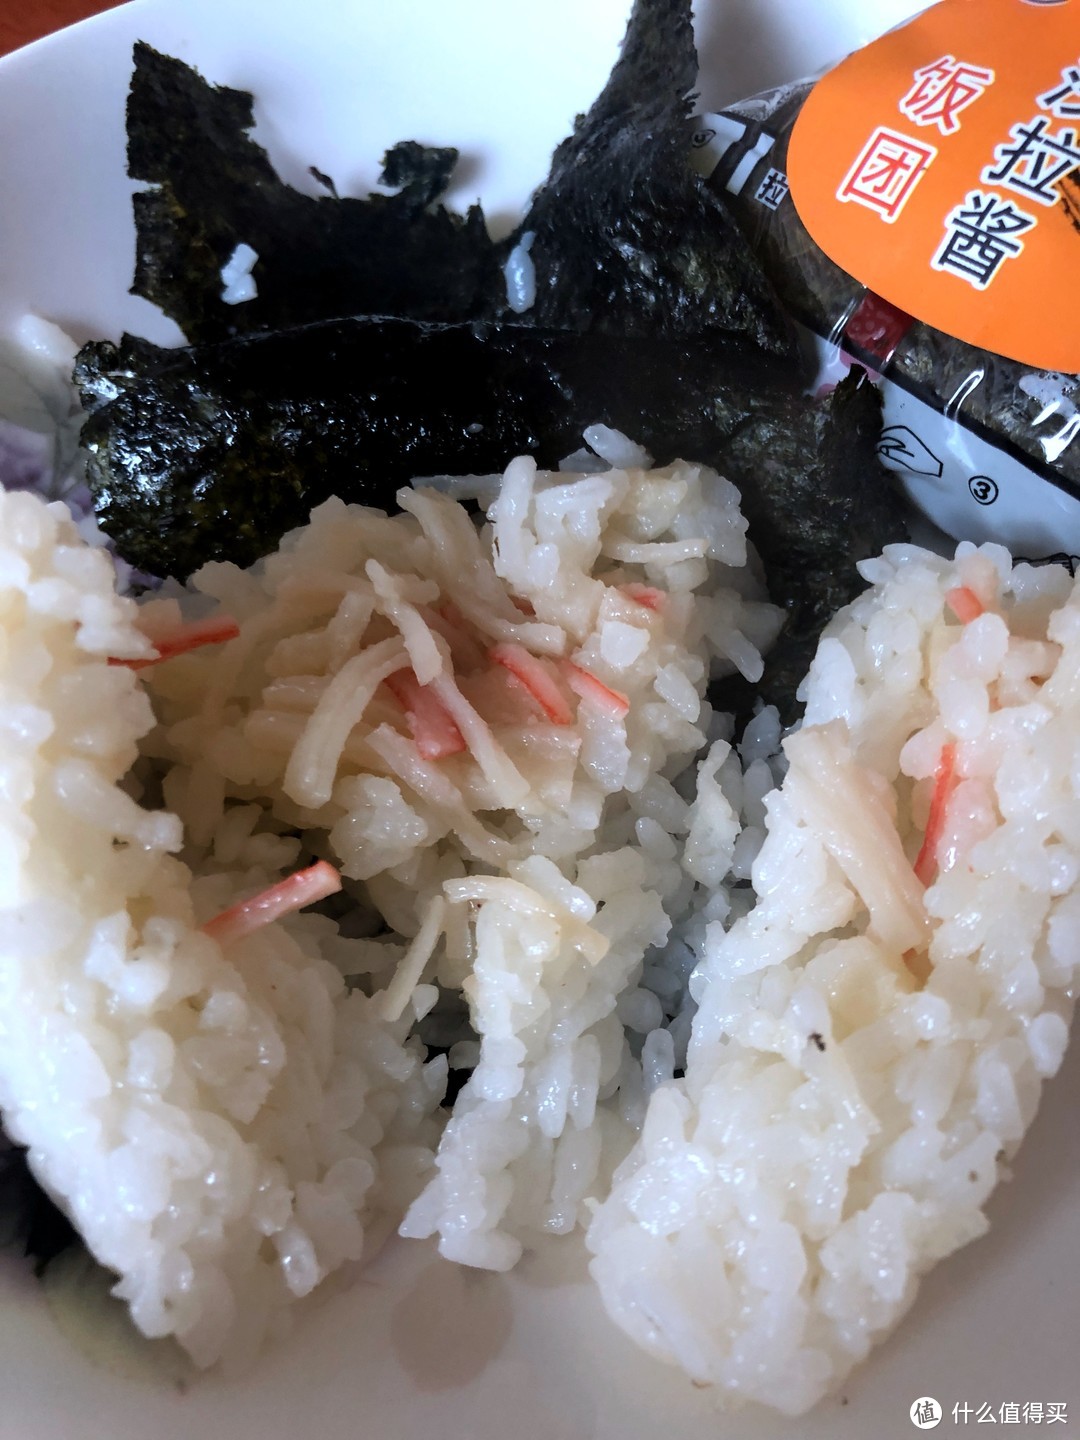 讲真，味道一般，但挺撑食-京鲁远洋 冷冻蟹肉沙拉酱饭团 试吃